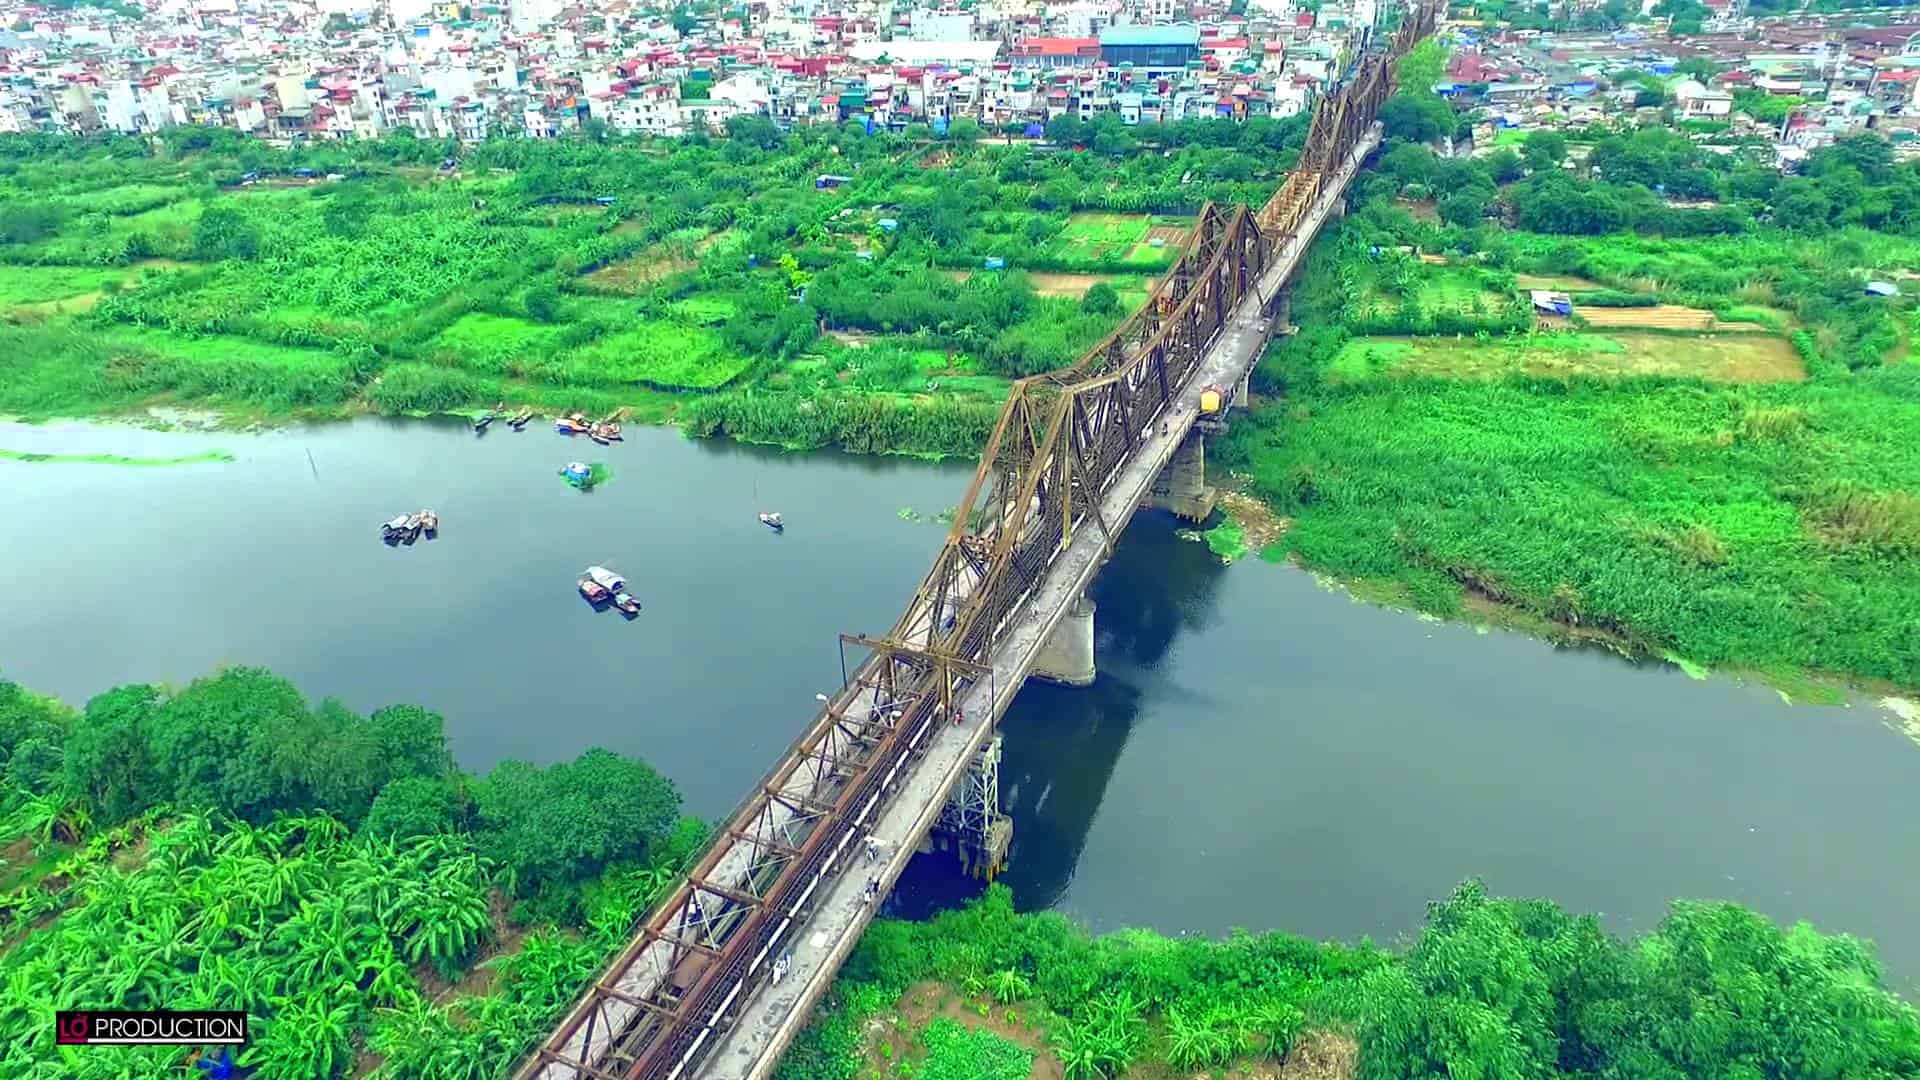 Bãi đá sông Hồng xanh ngắt ngay chân cầu Long Biên 